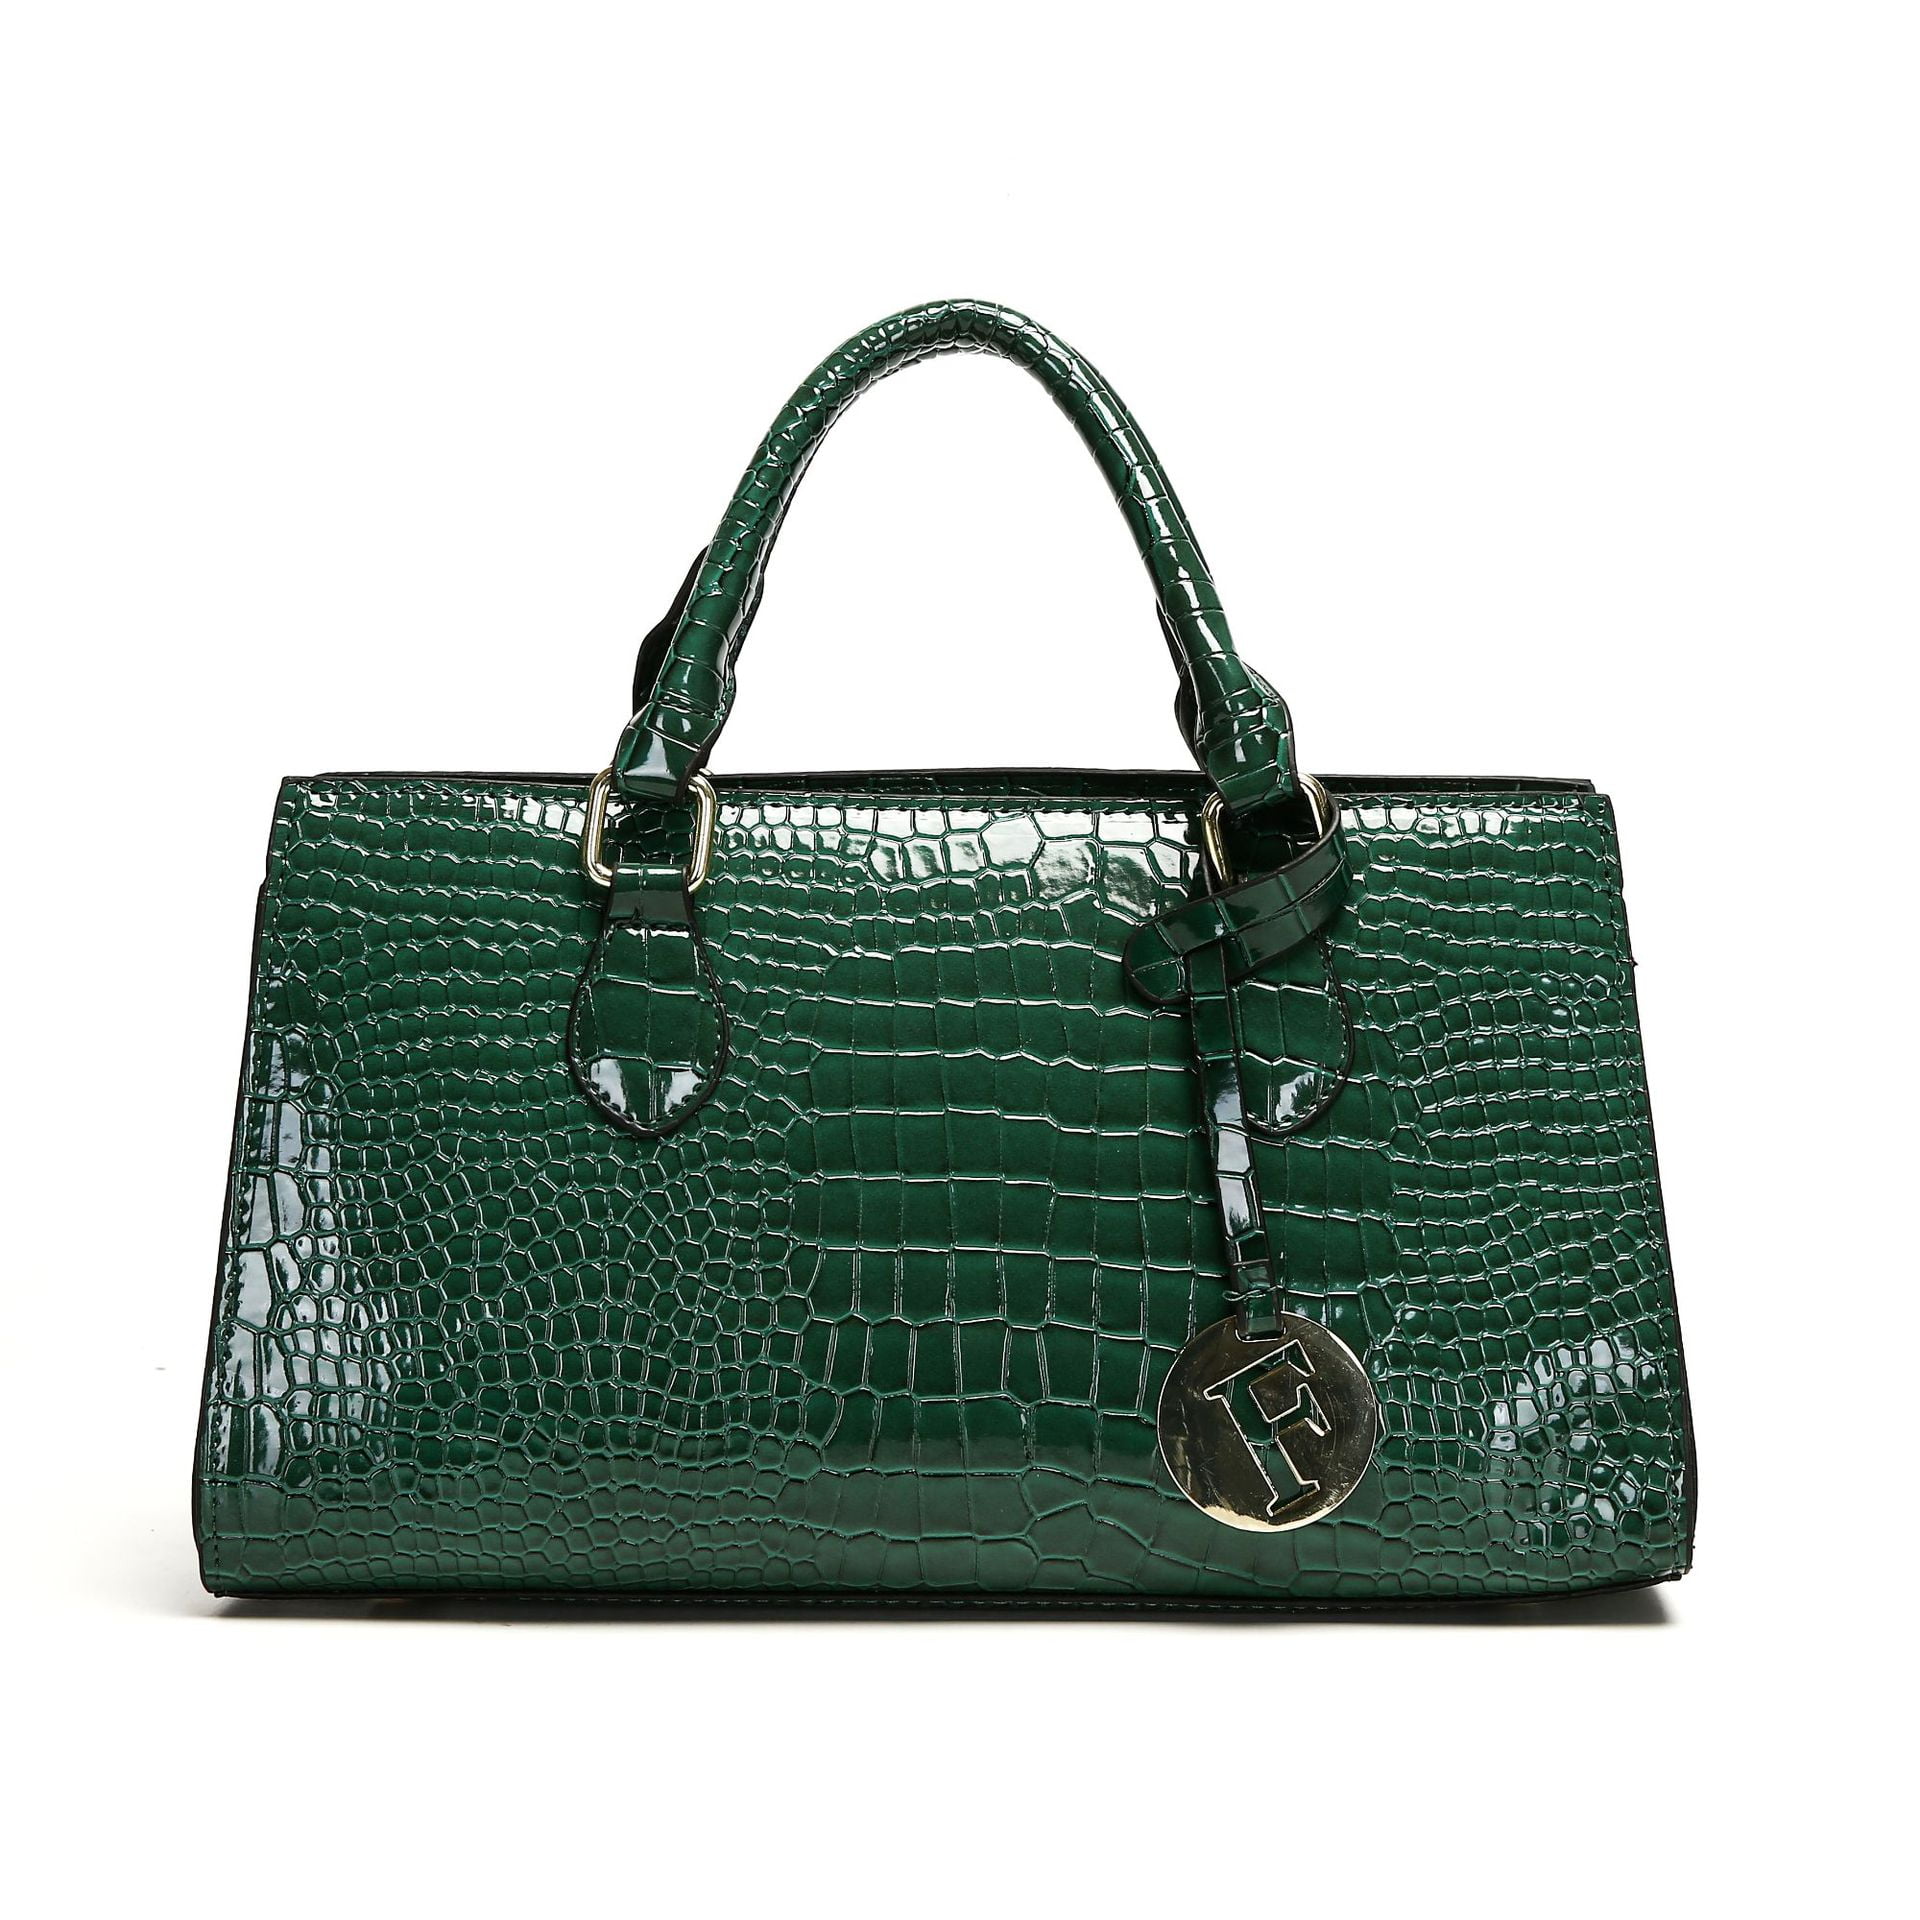 Quarryus Luxury Brand Handbags for Women Designer Tote Bag Commute ...